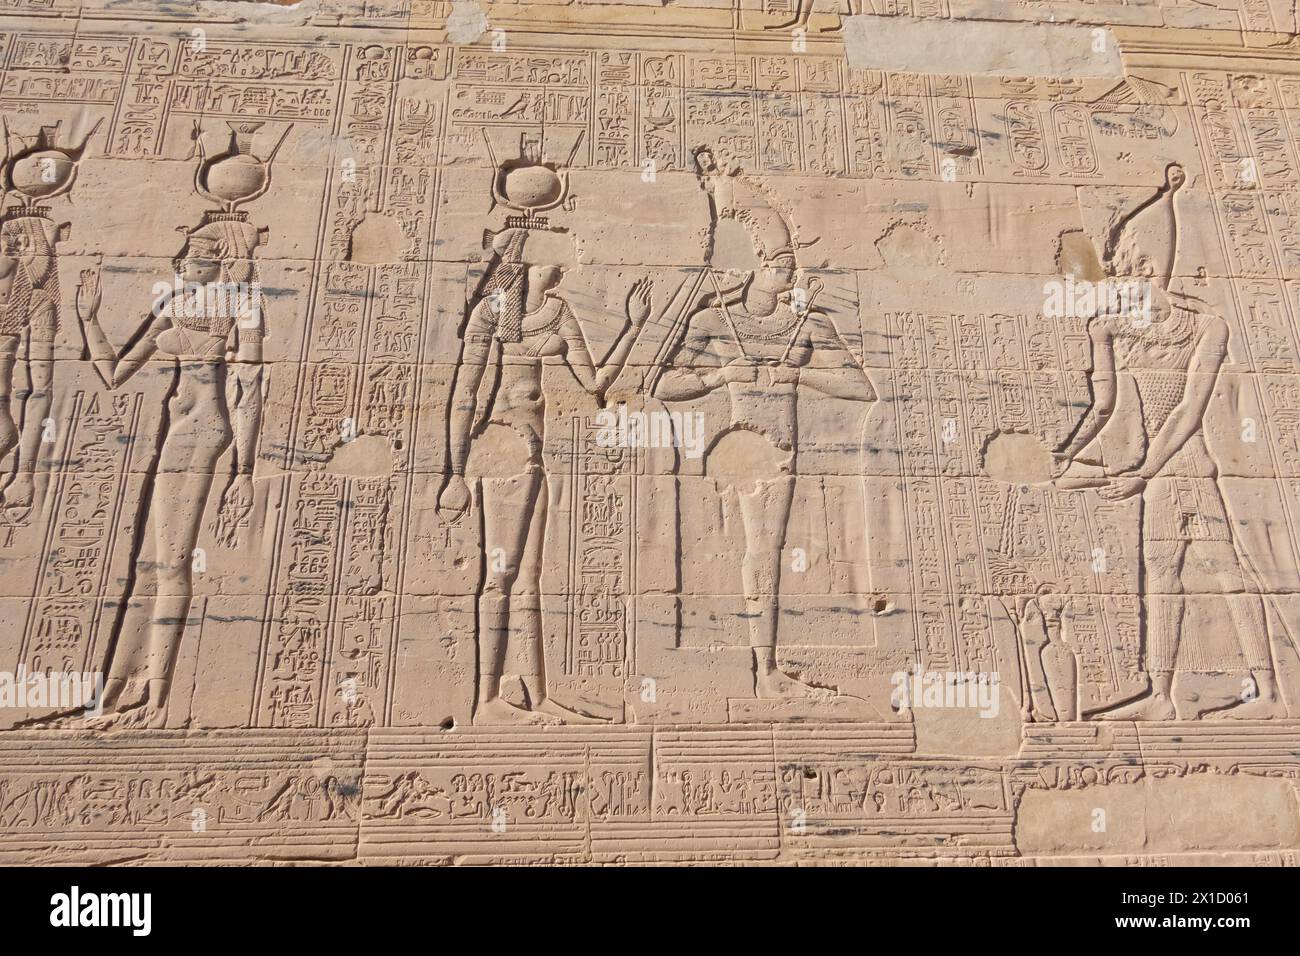 Sculptures en relief, complexe du temple de Philae, île d'Agilkia, réservoir du barrage d'Assouan. Lieu de sépulture d'Osiris. Égypte Banque D'Images